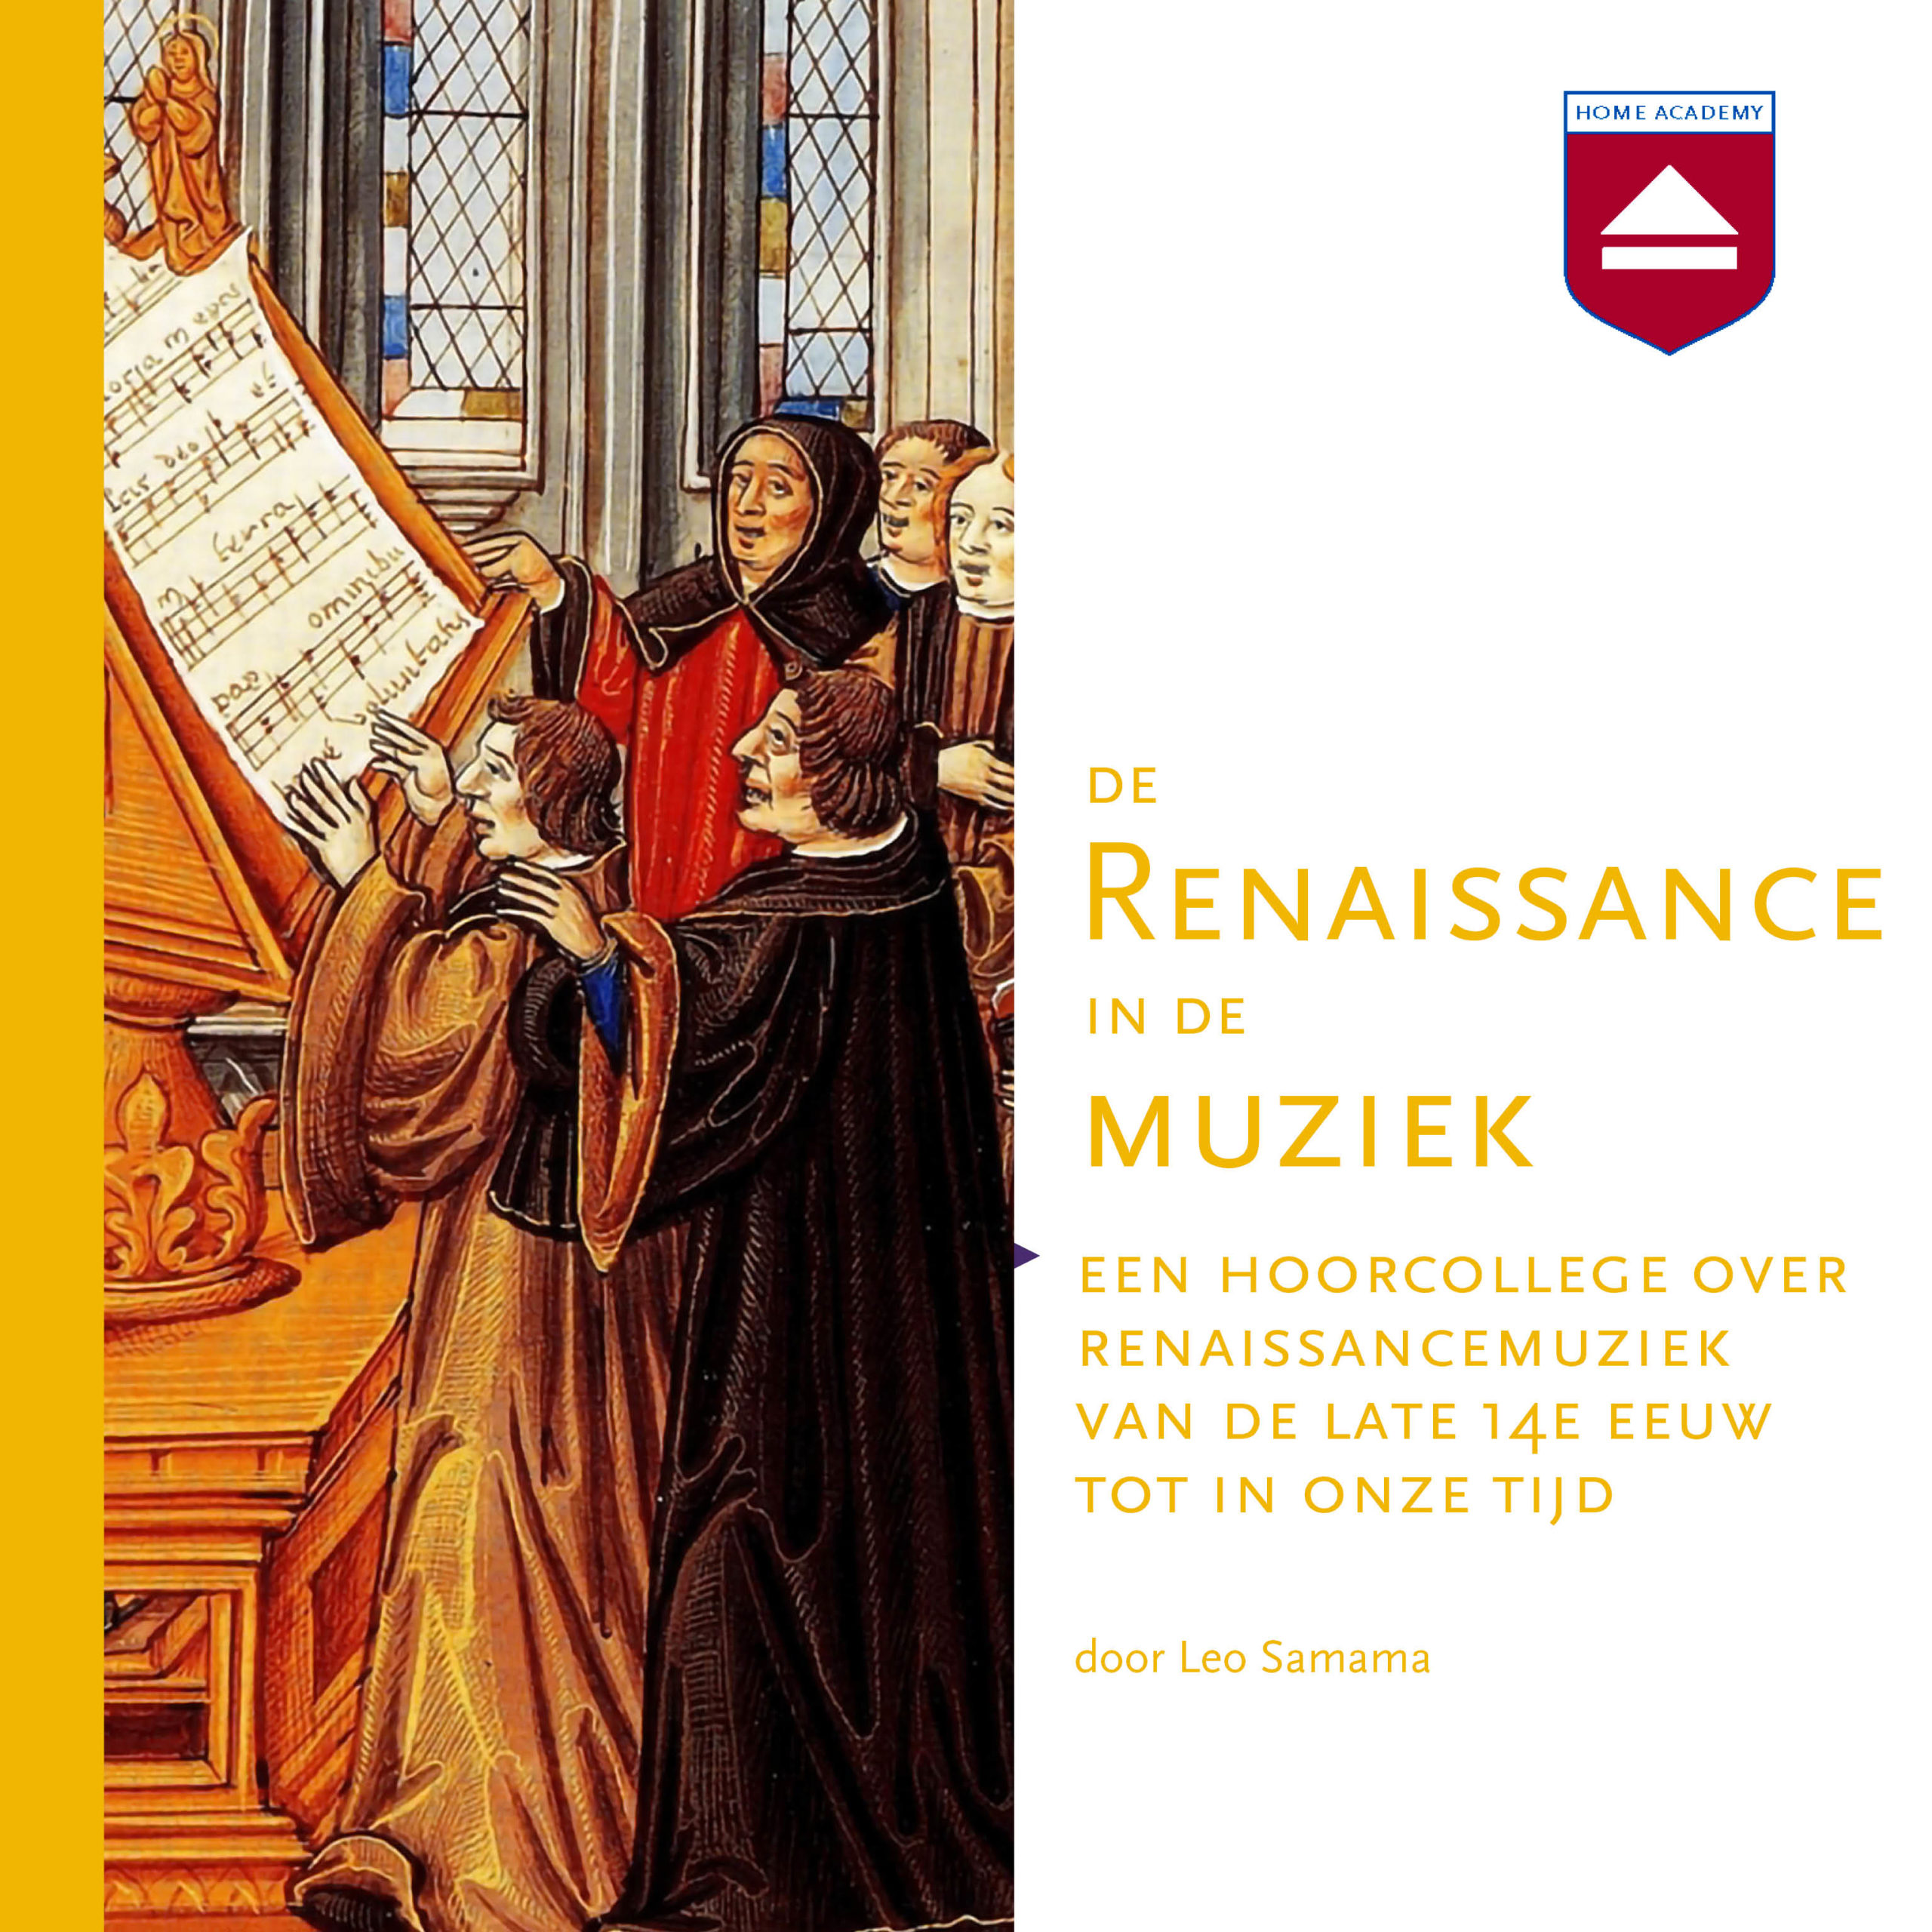 De Renaissance in de muziek